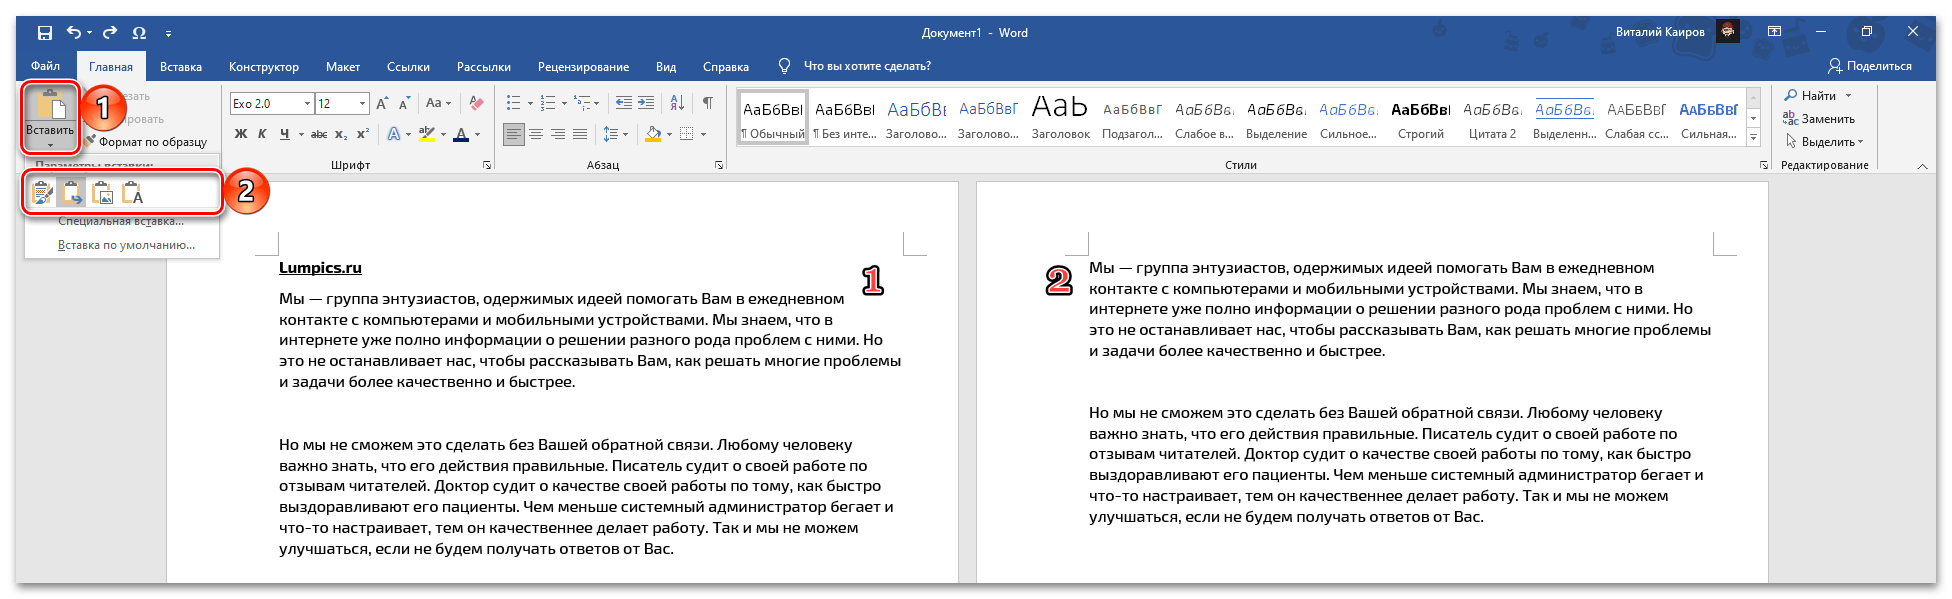 Вставка скопированной страницы путем специальной вставки в начало документа Microsoft Word